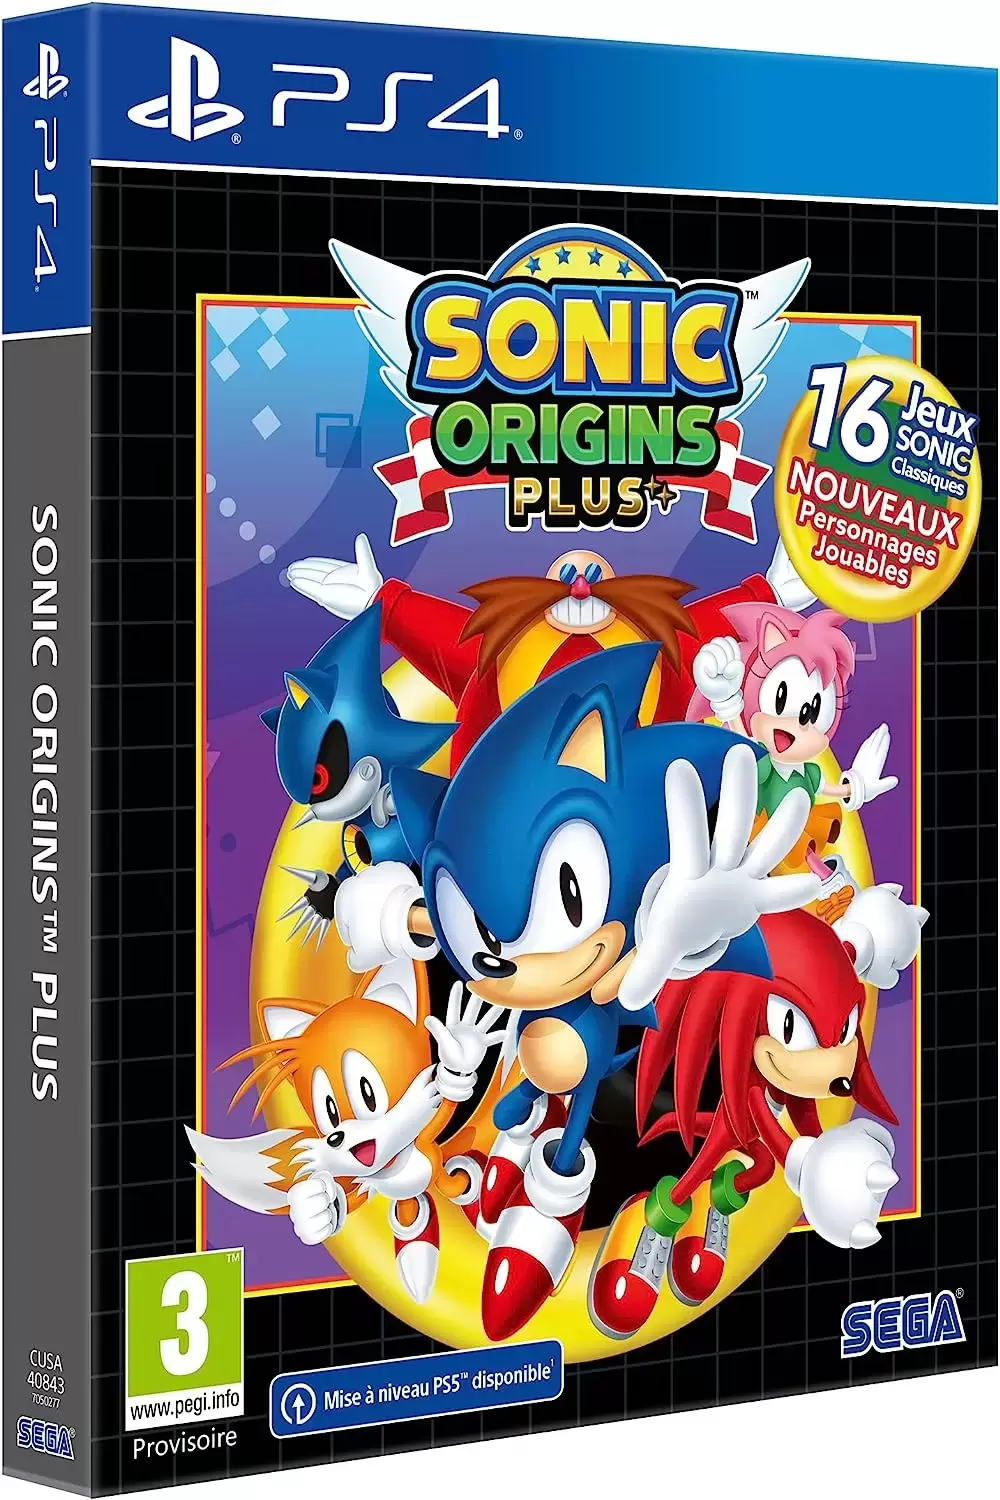 PS4 Games - Sonic Origins Plus